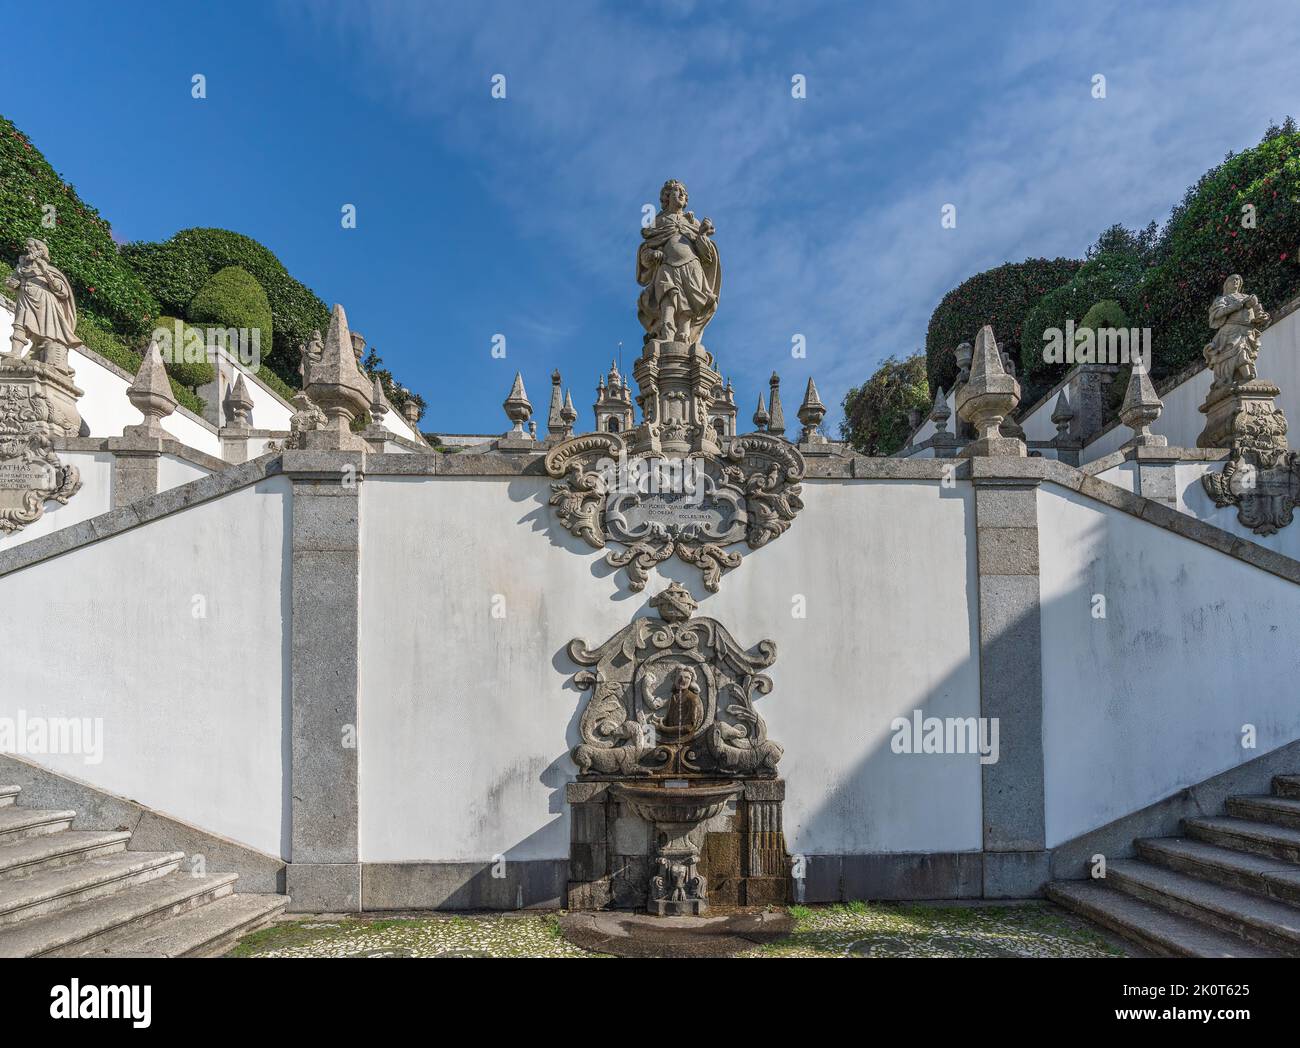 Geruchbrunnen und Vir Sapiens Statue bei Five Senses Treppe bei Sanctuary of Bom Jesus do Monte - Braga, Portugal Stockfoto